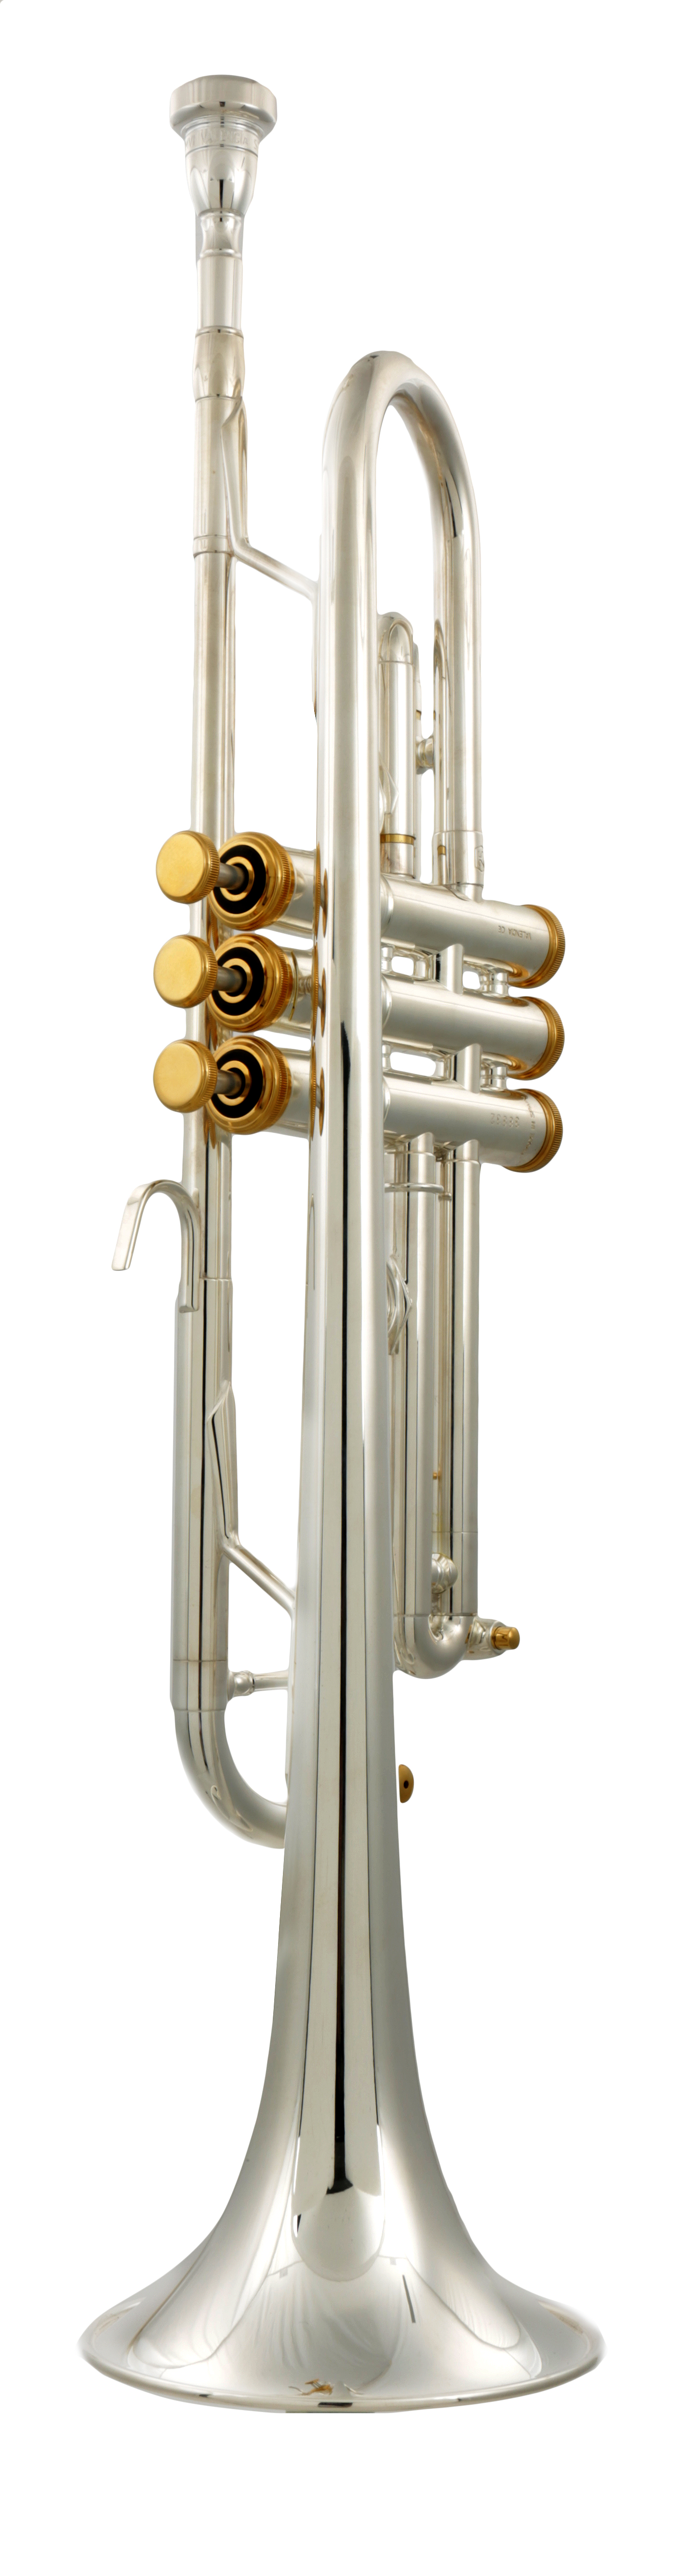 Forte 5000 Trompete versilbert, Goldapplikationen, Koffer